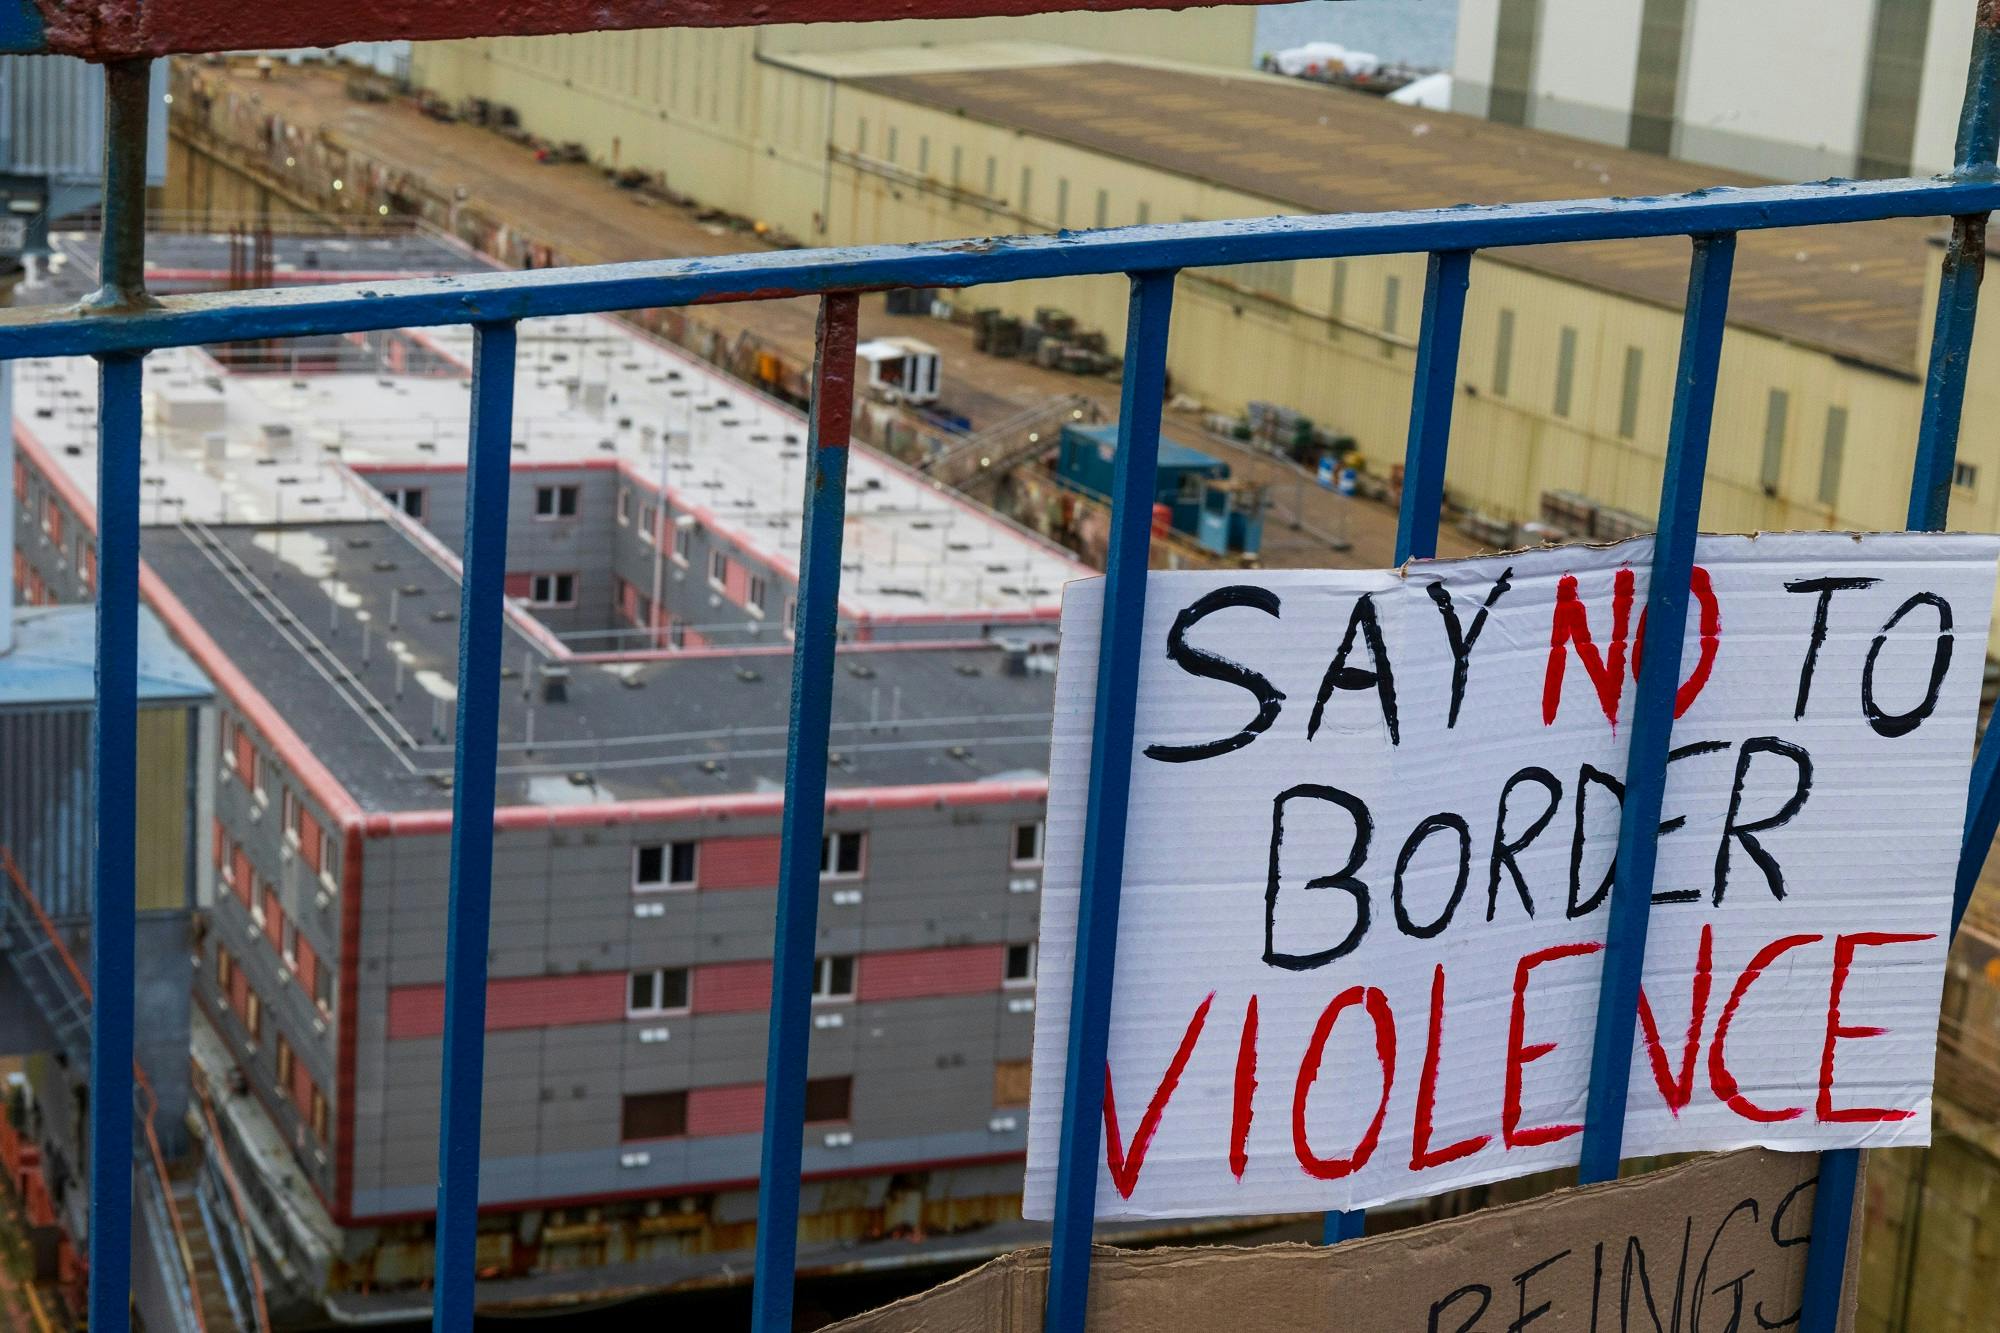 حمایت معترضان در پورتلند، ساحل دورست در جنوب غربی انگلستان از پناهندگان و اعتراض آنها به دولت ــ روی پارچه نوشته شده: «به خشونت مرز بگو "نه"» ــ عکس: Shutterstock